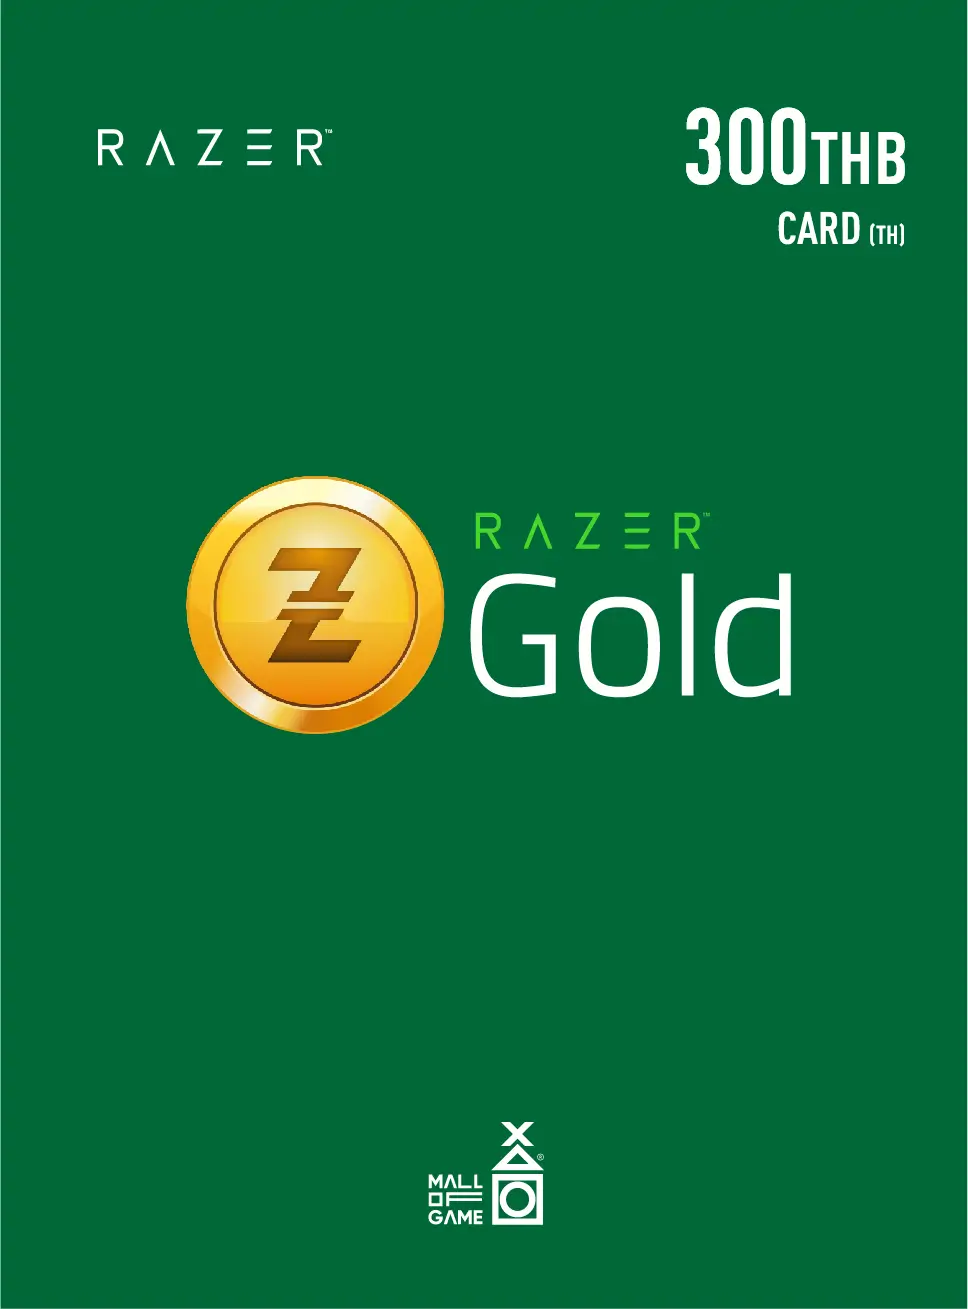 Razer Gold THB300 (TH)